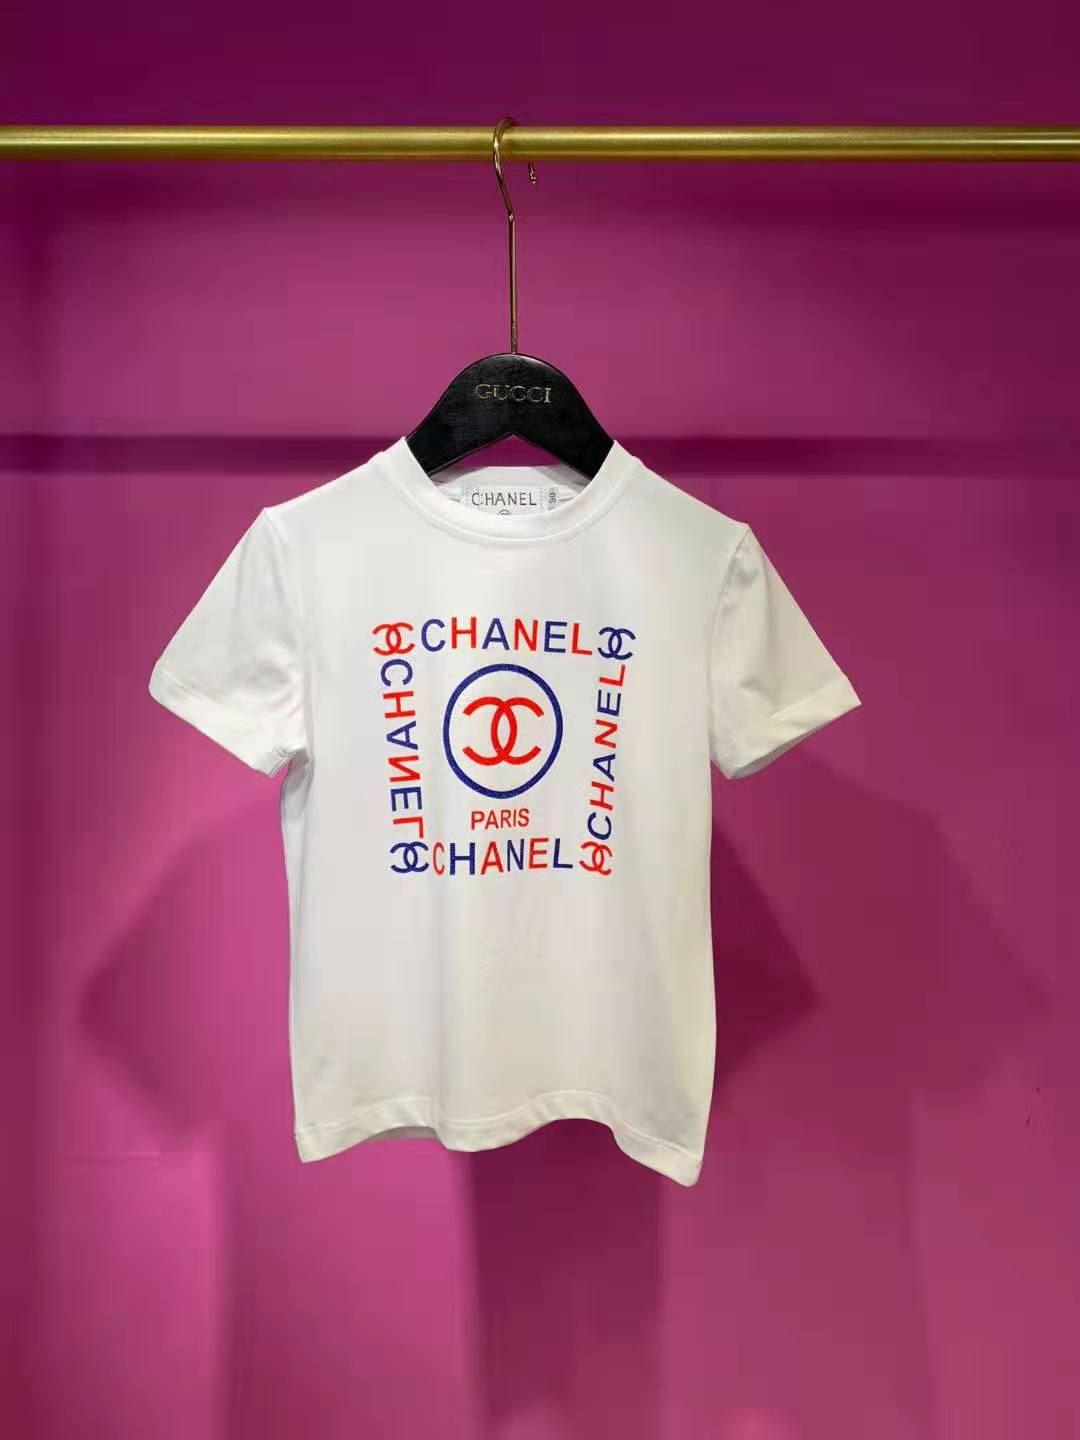 シャネル 子供服 夏 女の子 Chanel 子供服tシャツ 半袖 韓国風 可愛い 人気